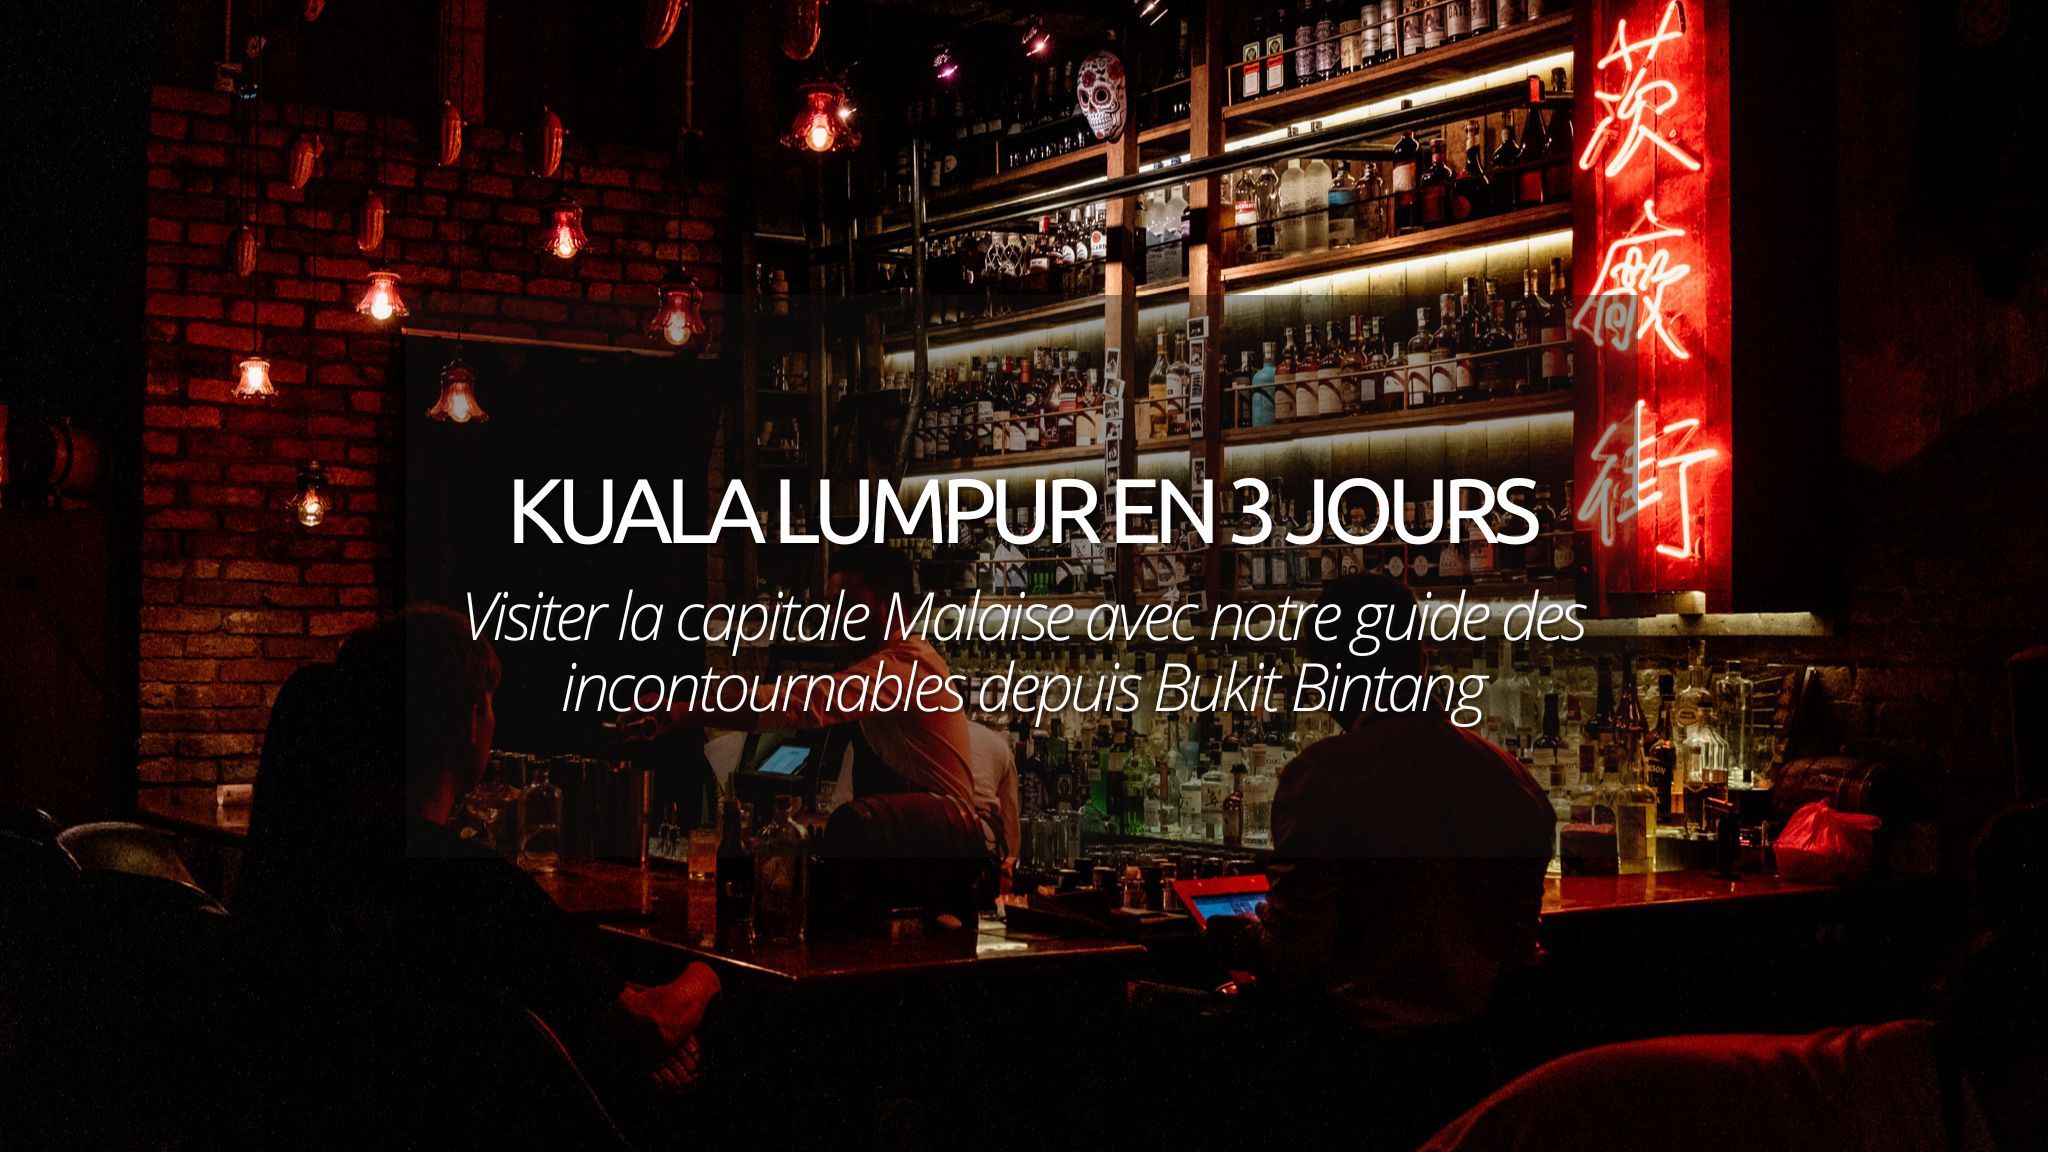 Visiter Kuala Lumpur en 3 jours : notre guide des incontournables depuis Bukit Bintang